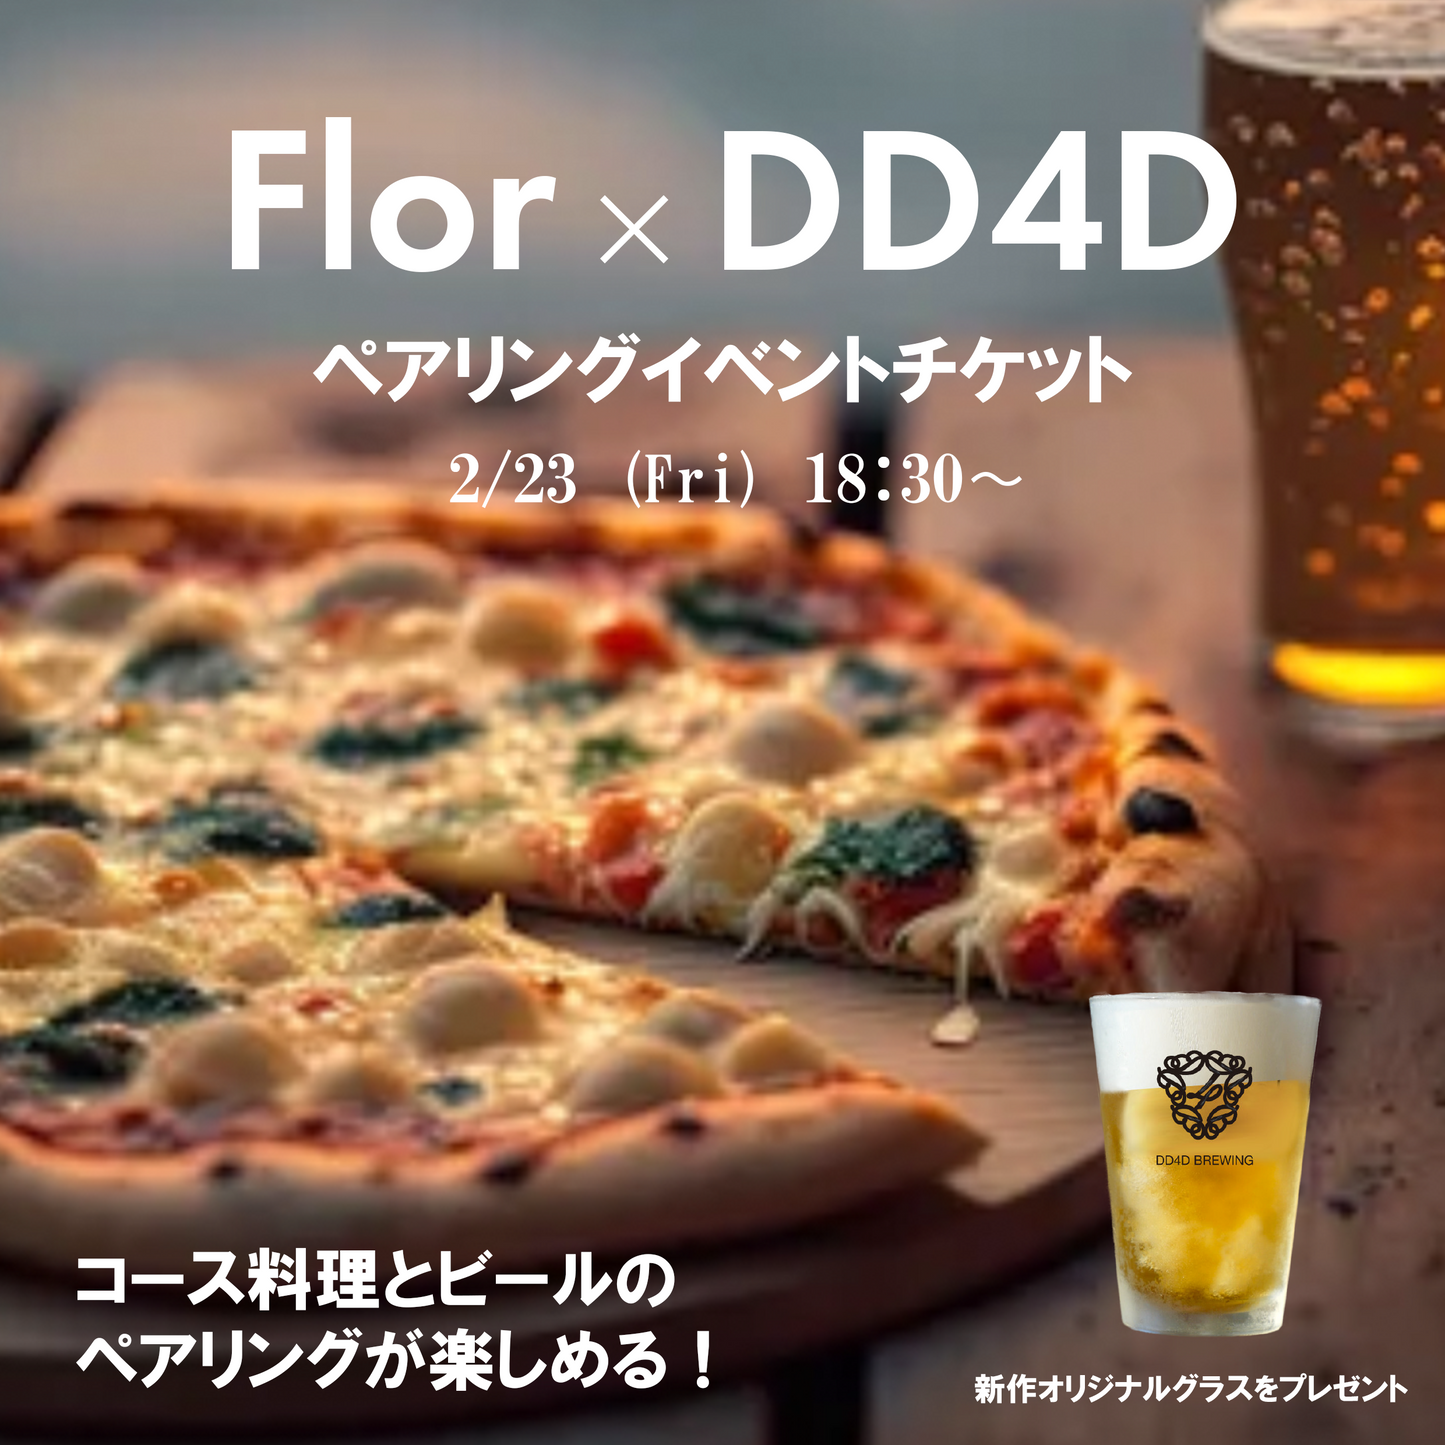 【ご予約のみ】2/23(金) Flor × DD4D ペアリングイベント